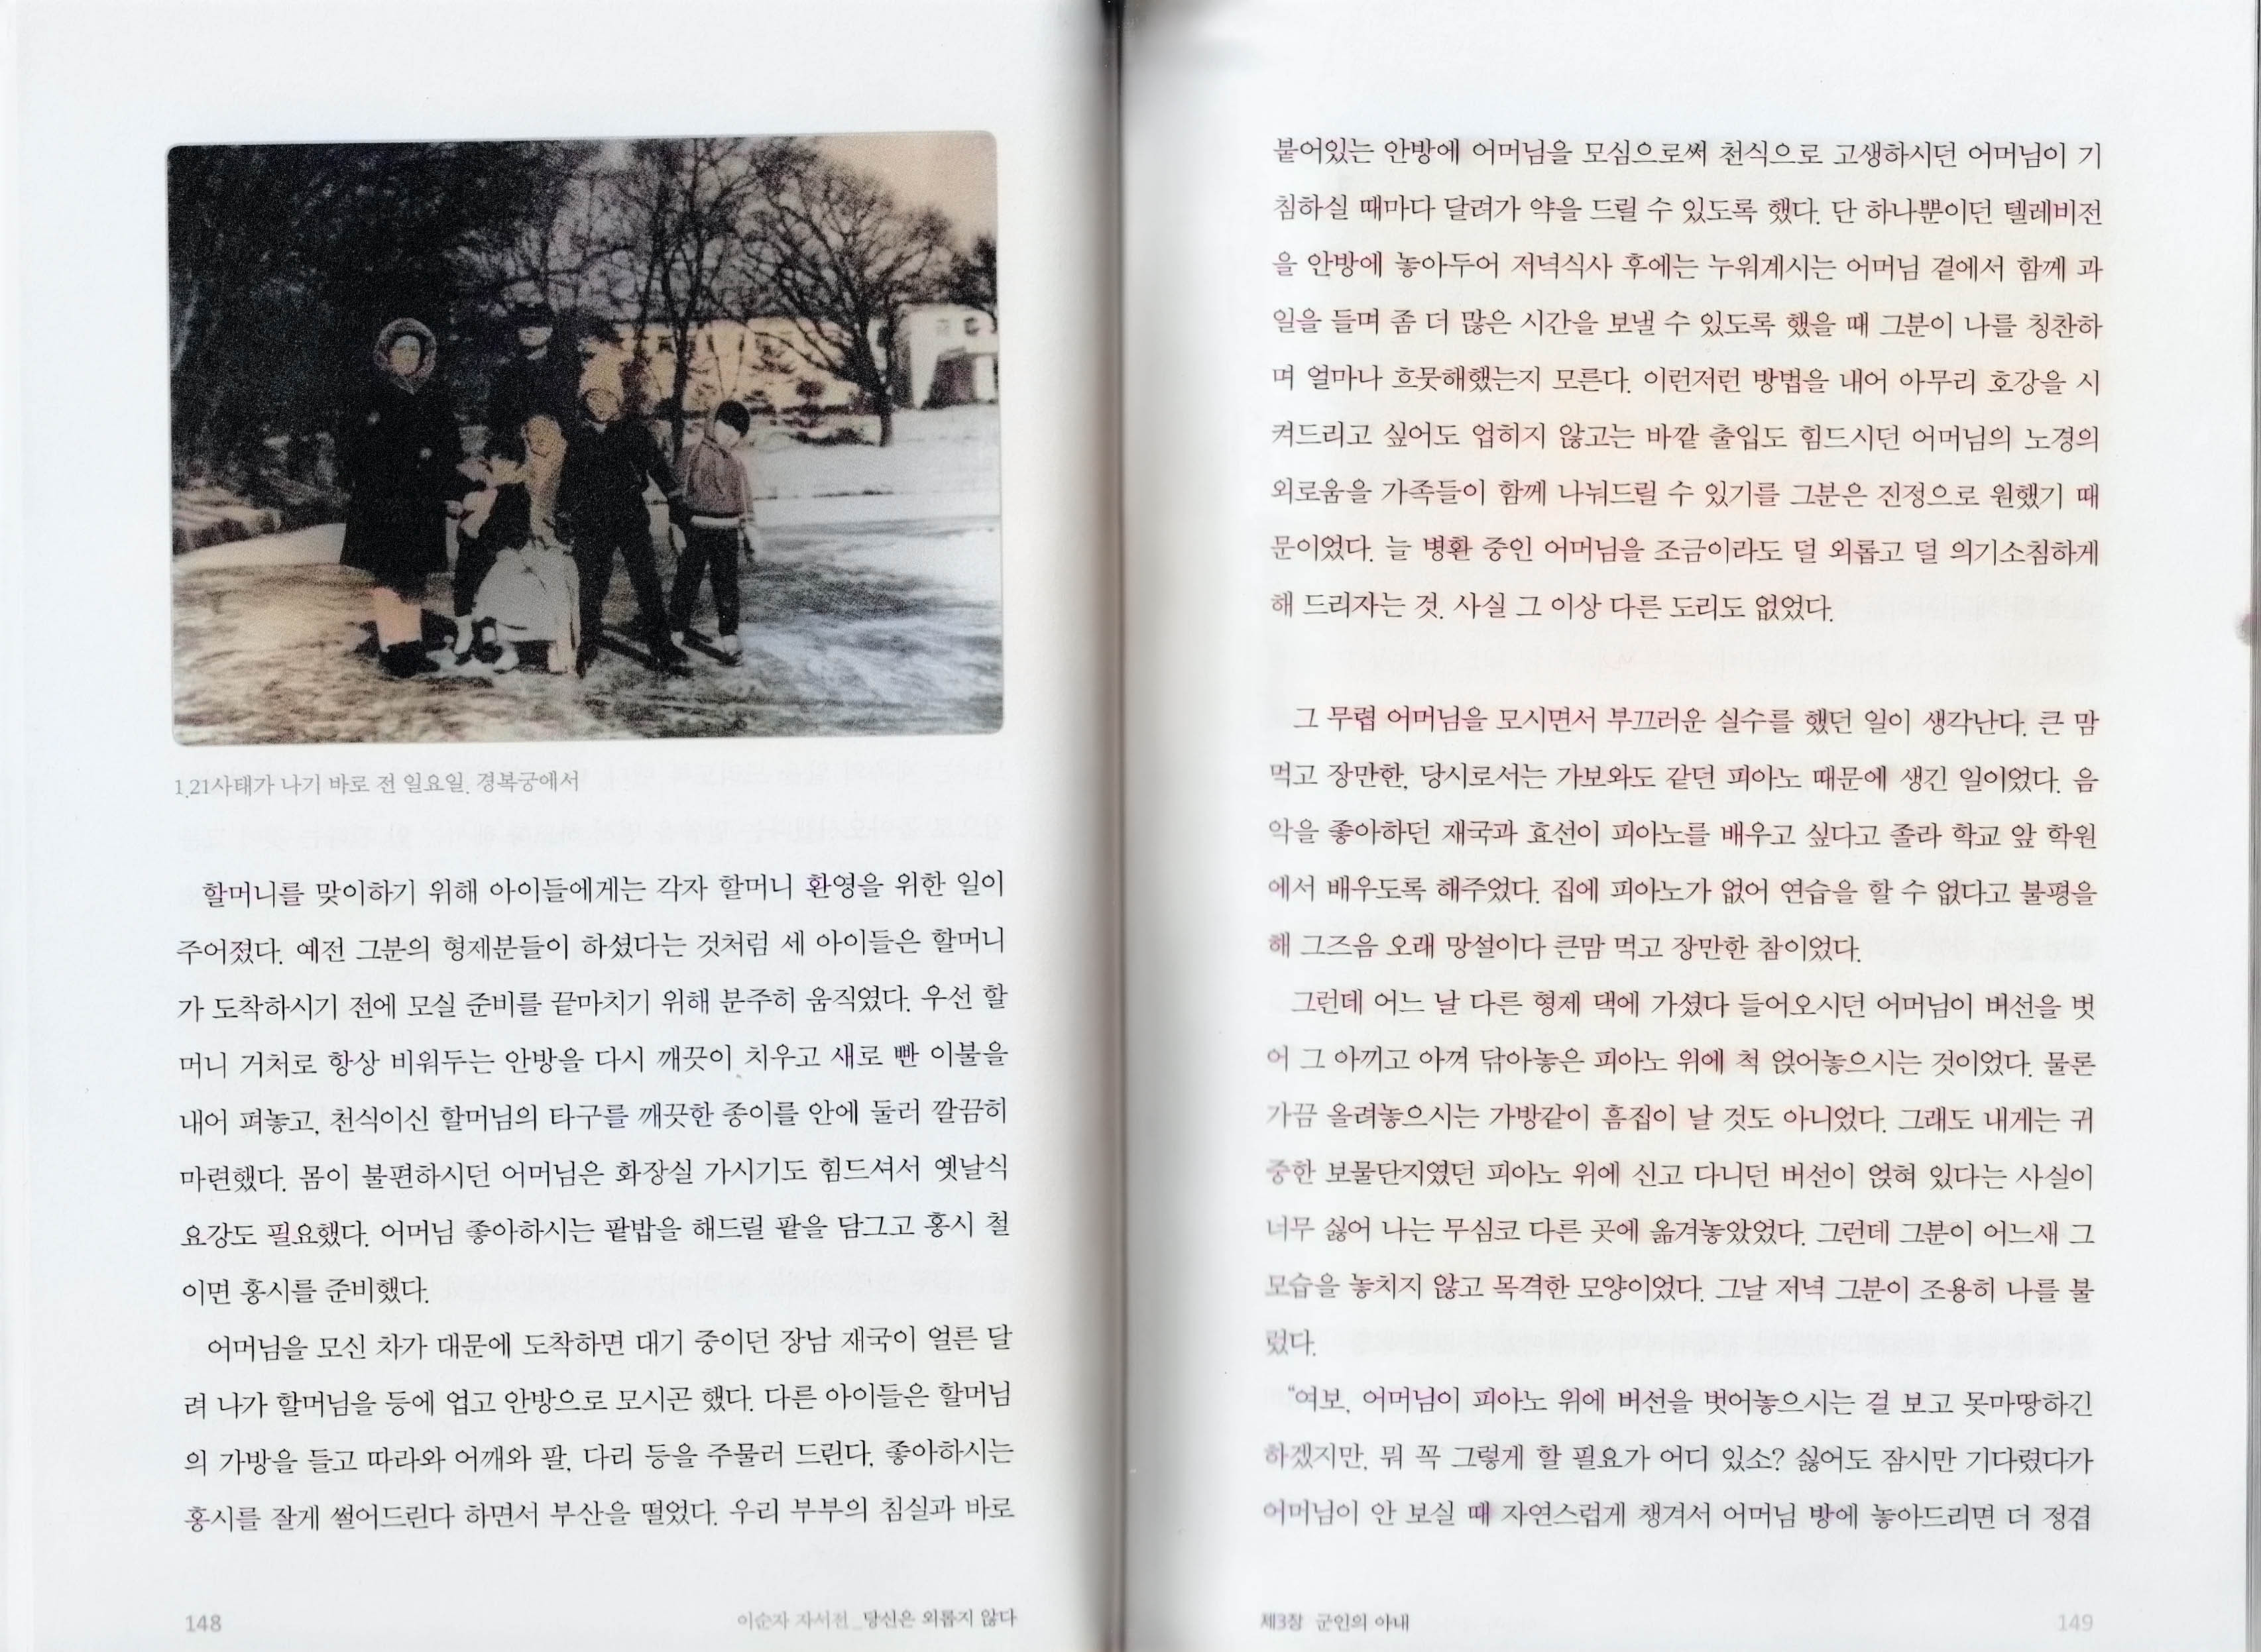 김신조 일당이 청와대를 습격하기 바로 한 주 전이었던 1968년 1월 14일 경복궁에서, 이순자 자서전 148~149쪽